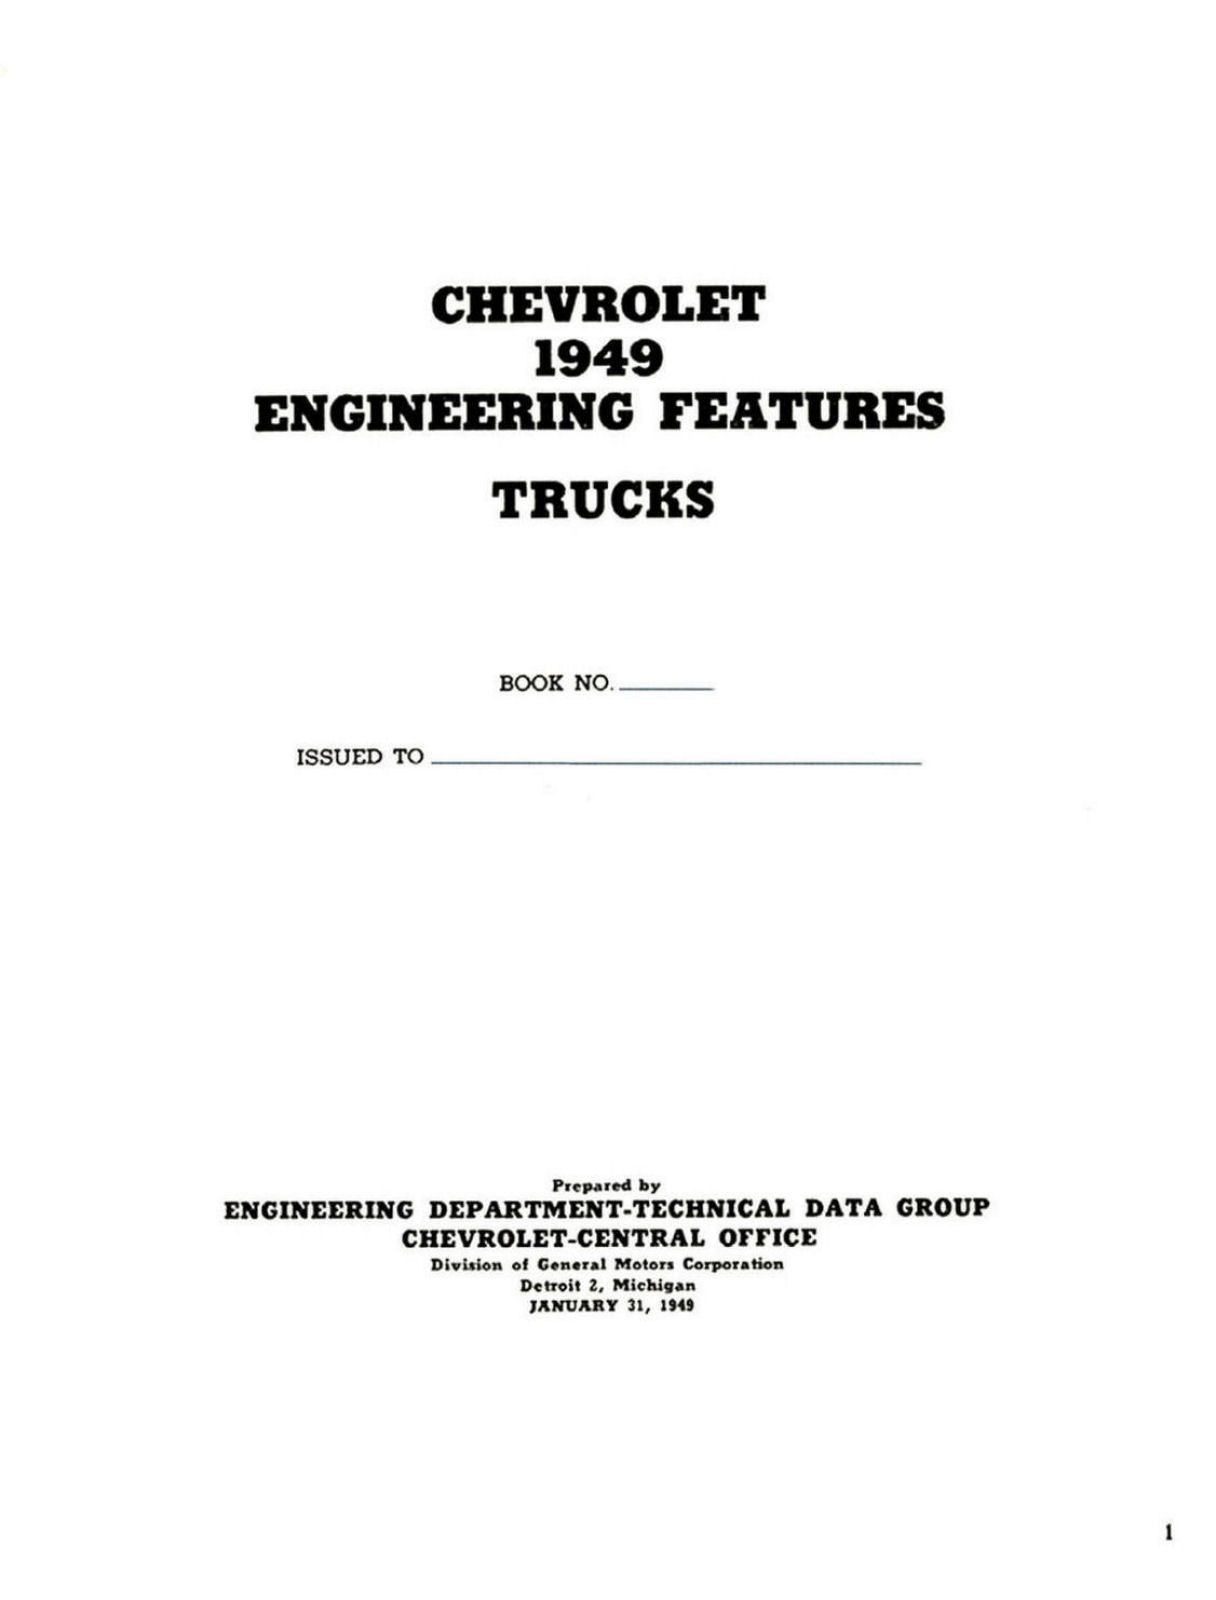 1949 Chevrolet Truck Engineering Features-02